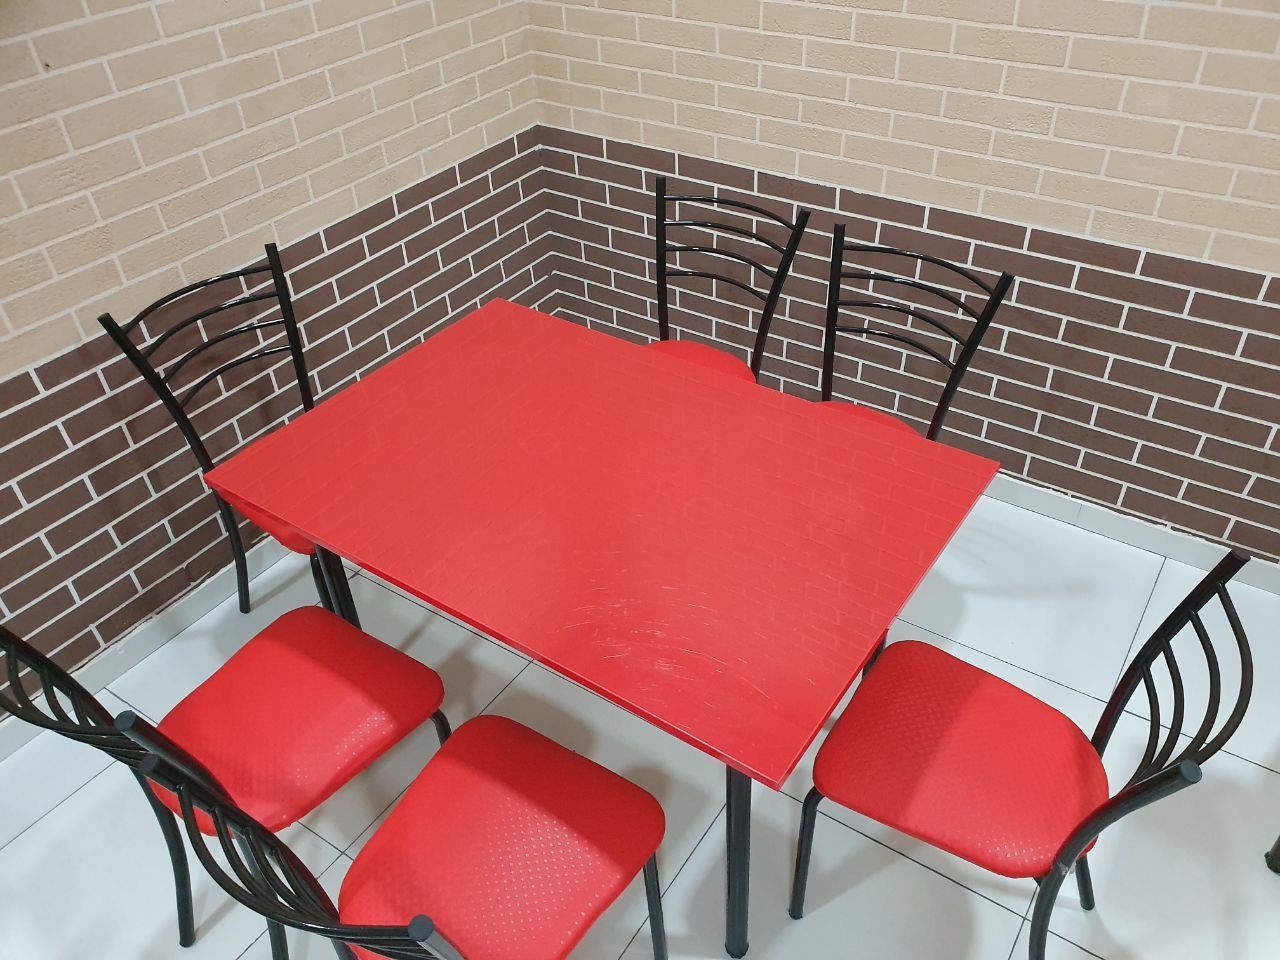 Кухонный стол с четырьмя стульями 870.000 сум